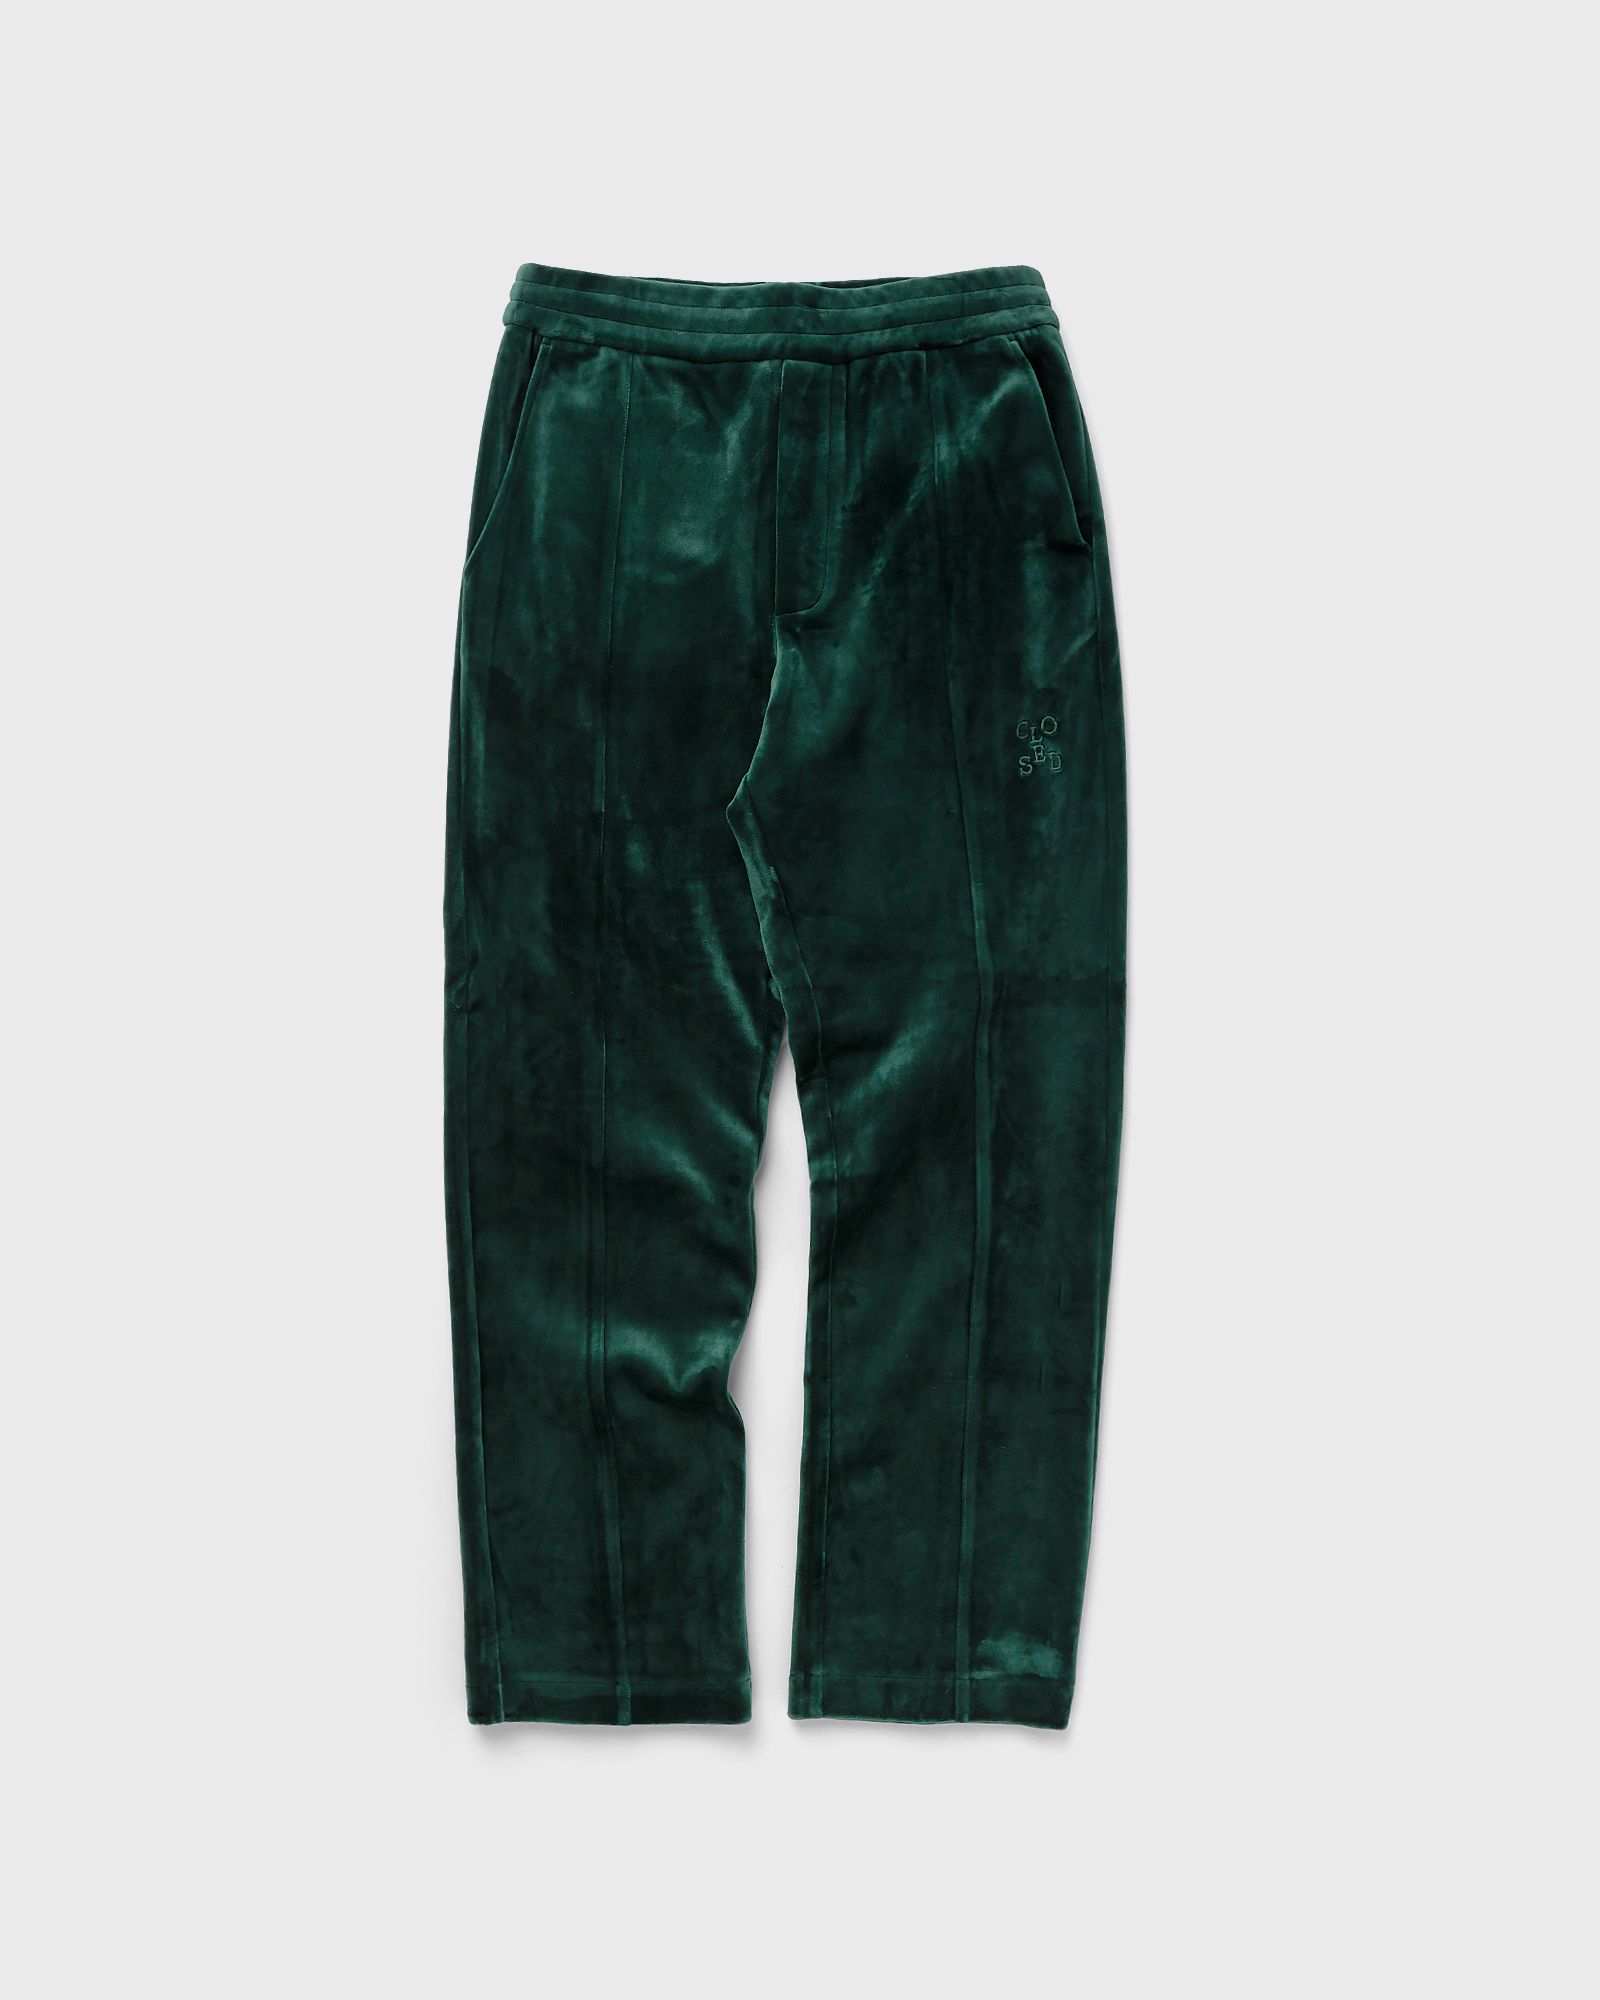 CLOSED - sweat pants men sweatpants green in größe:l